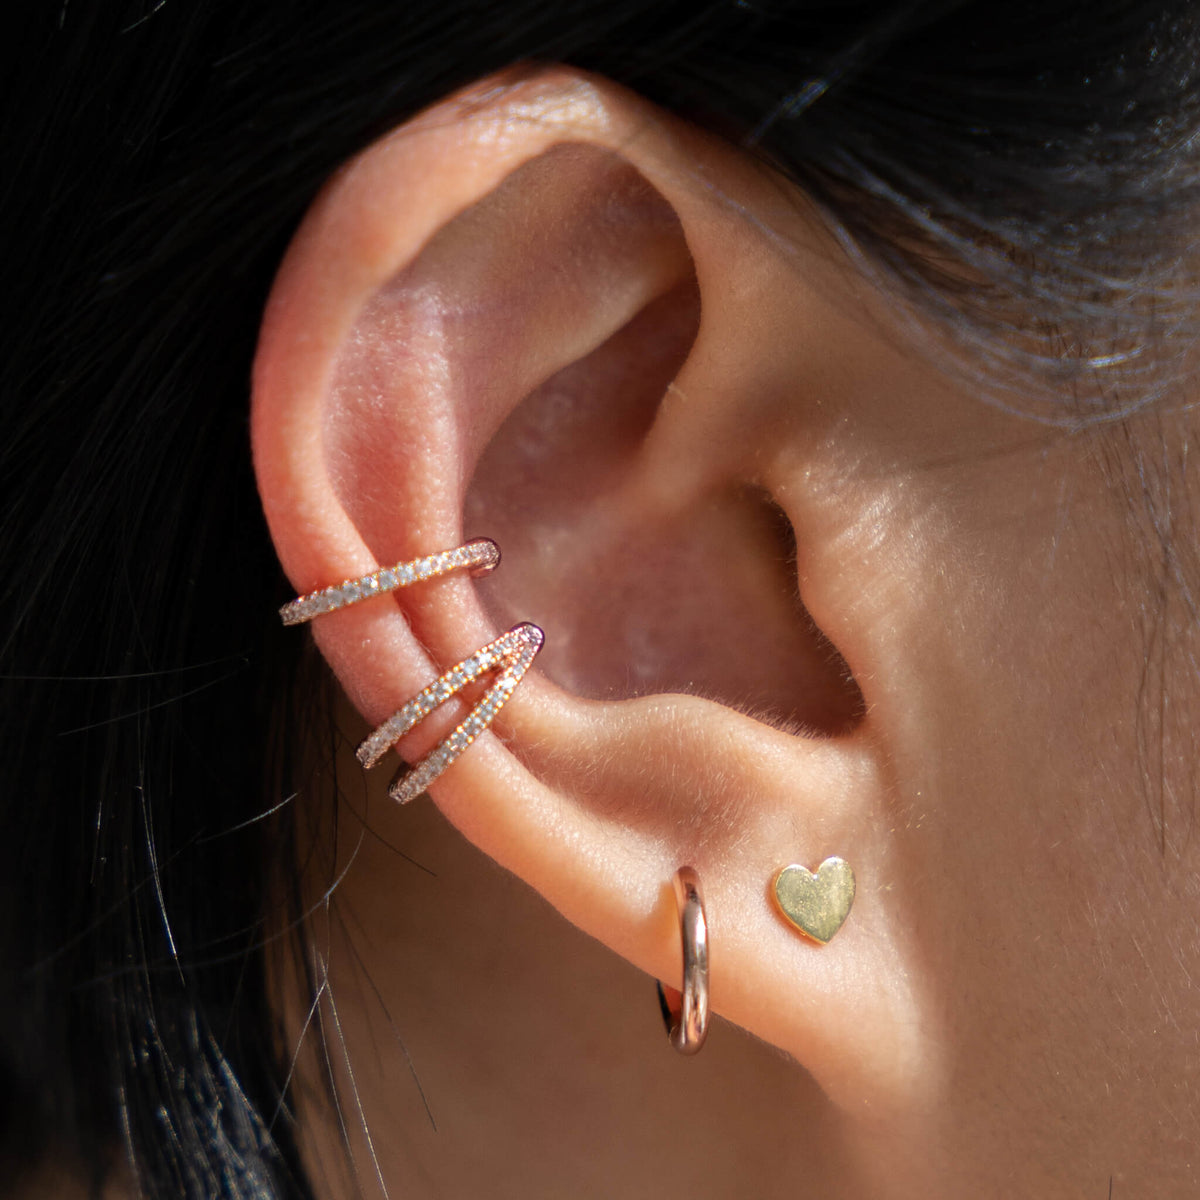 EAR CUFF EARRINGS - Golden